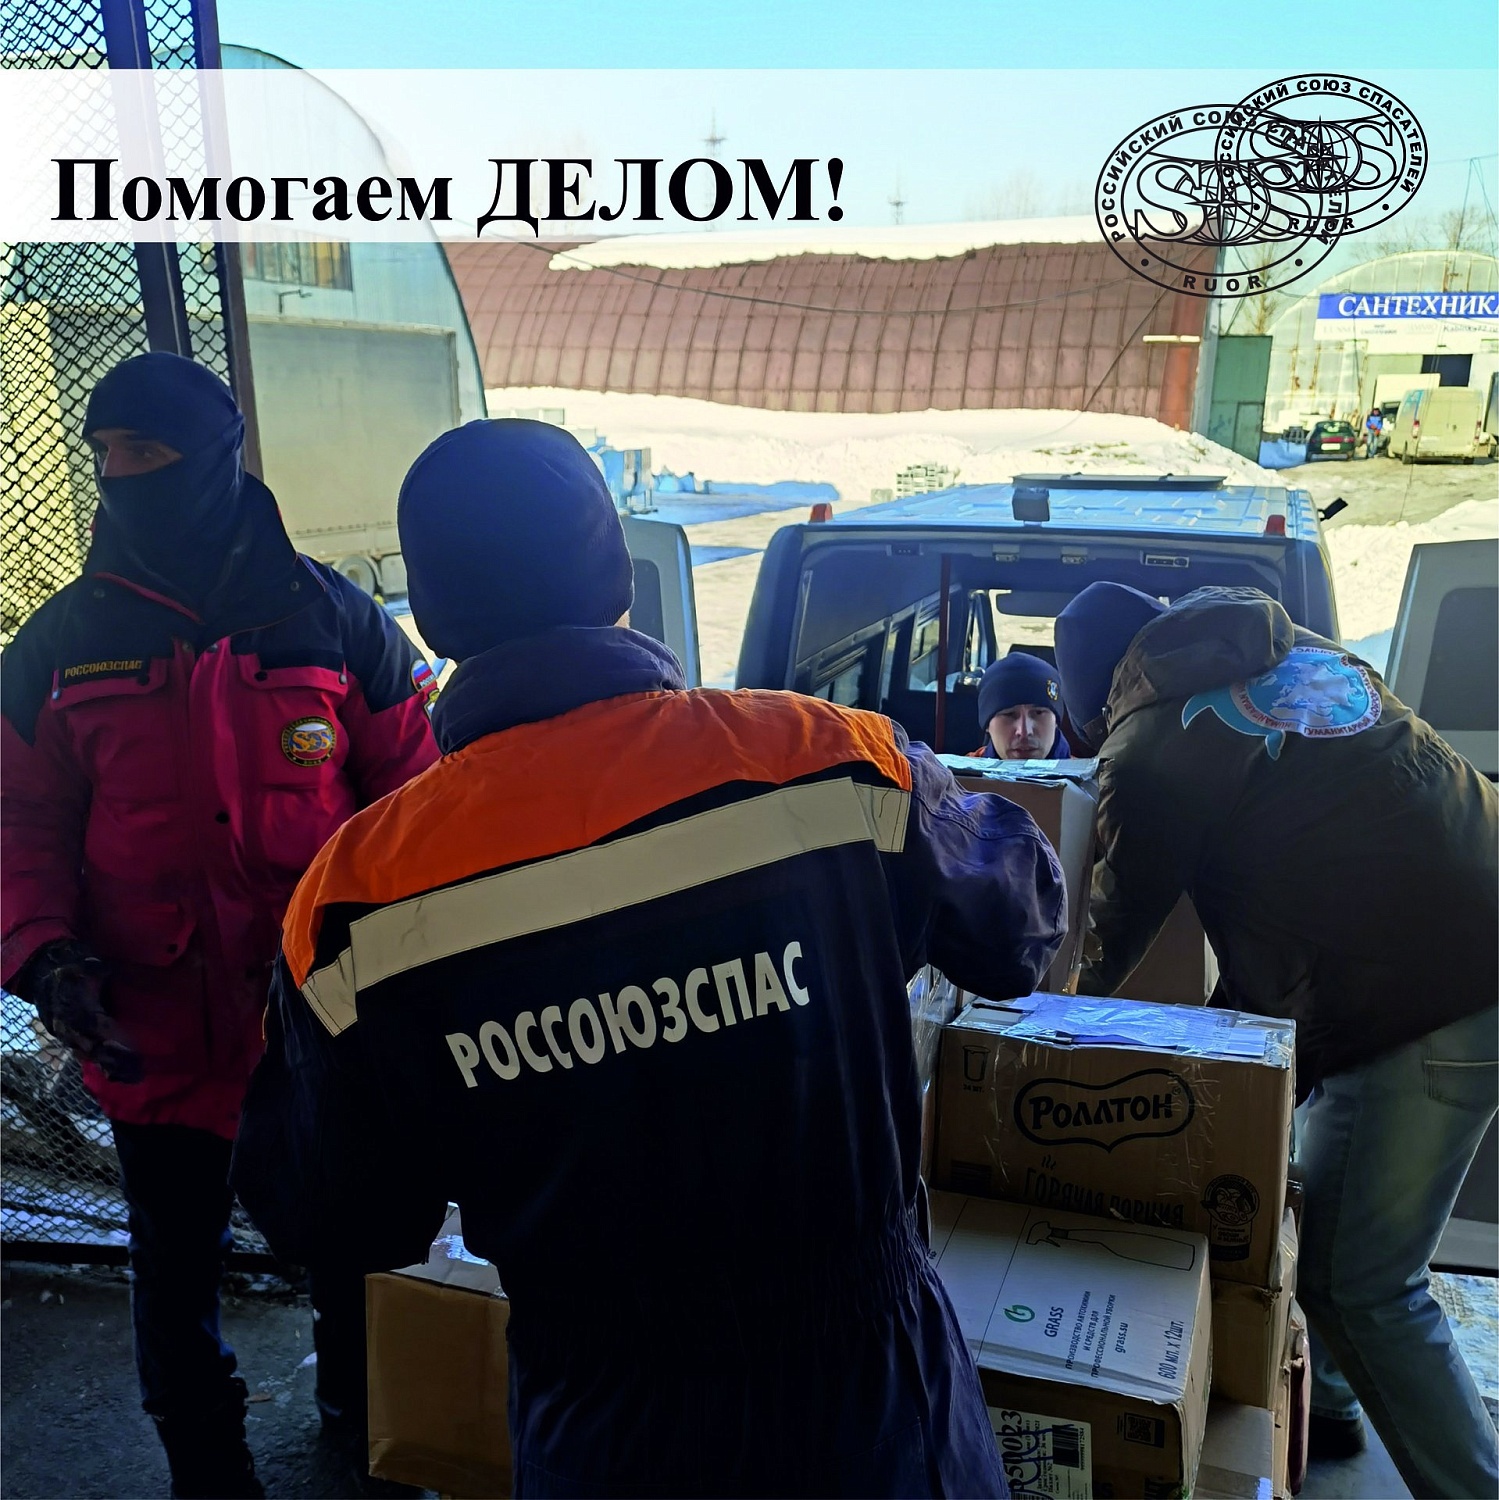 6 марта Спасатели-добровольцы и специалисты Тюменского регионального отделения РОССОЮЗСПАСа приняли участие в сортировке и формировании гуманитарной помощи со всей Тюменской области